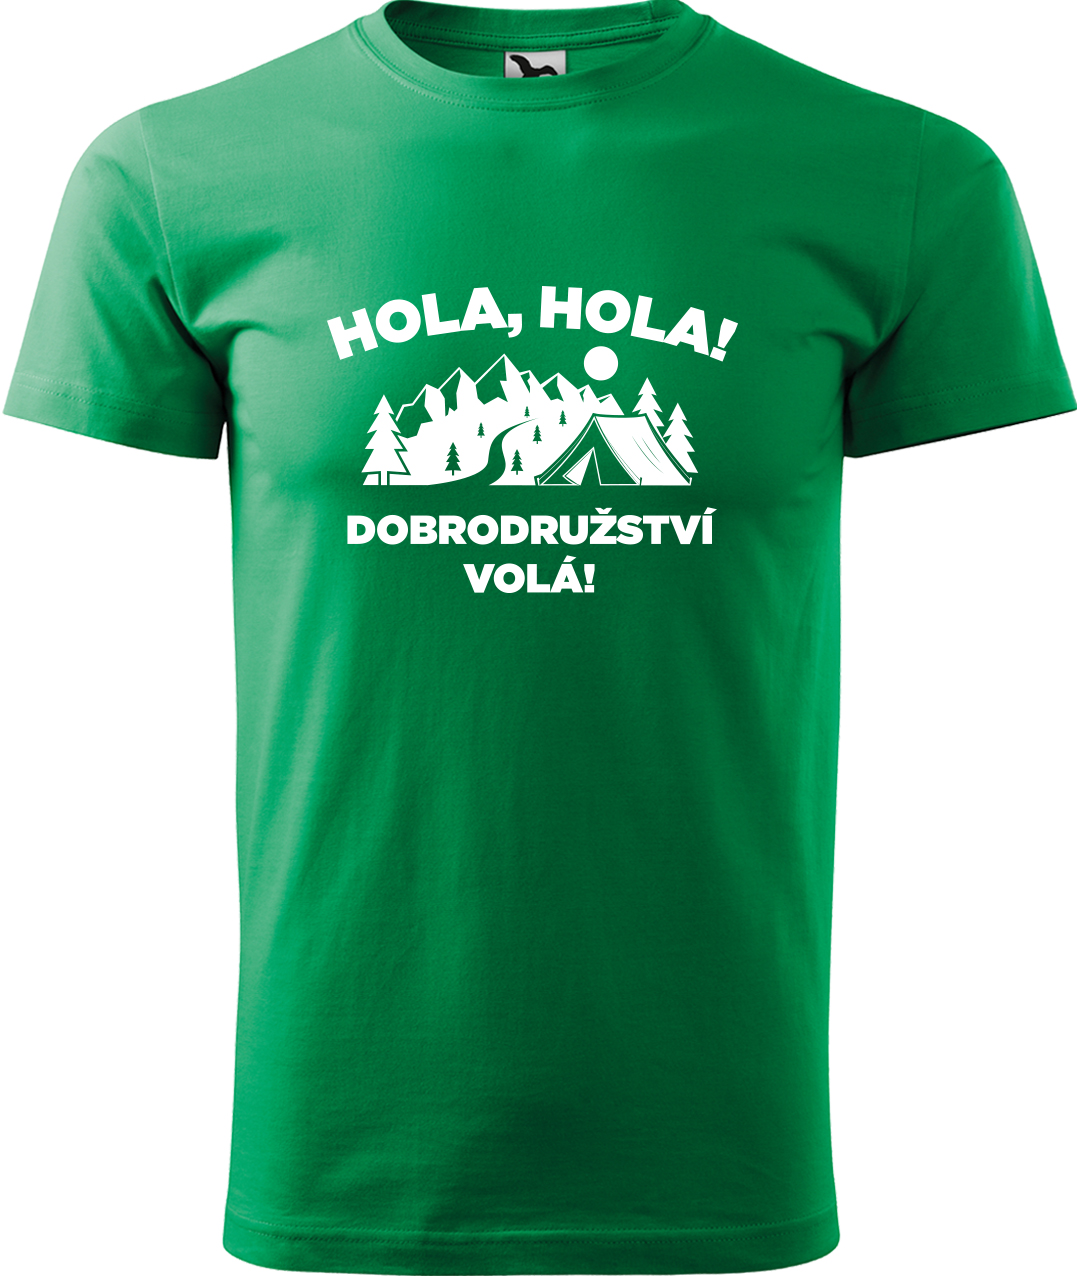 Pánské cestovatelské tričko - Hola hola! Dobrodružství volá! Velikost: XL, Barva: Středně zelená (16), Střih: pánský